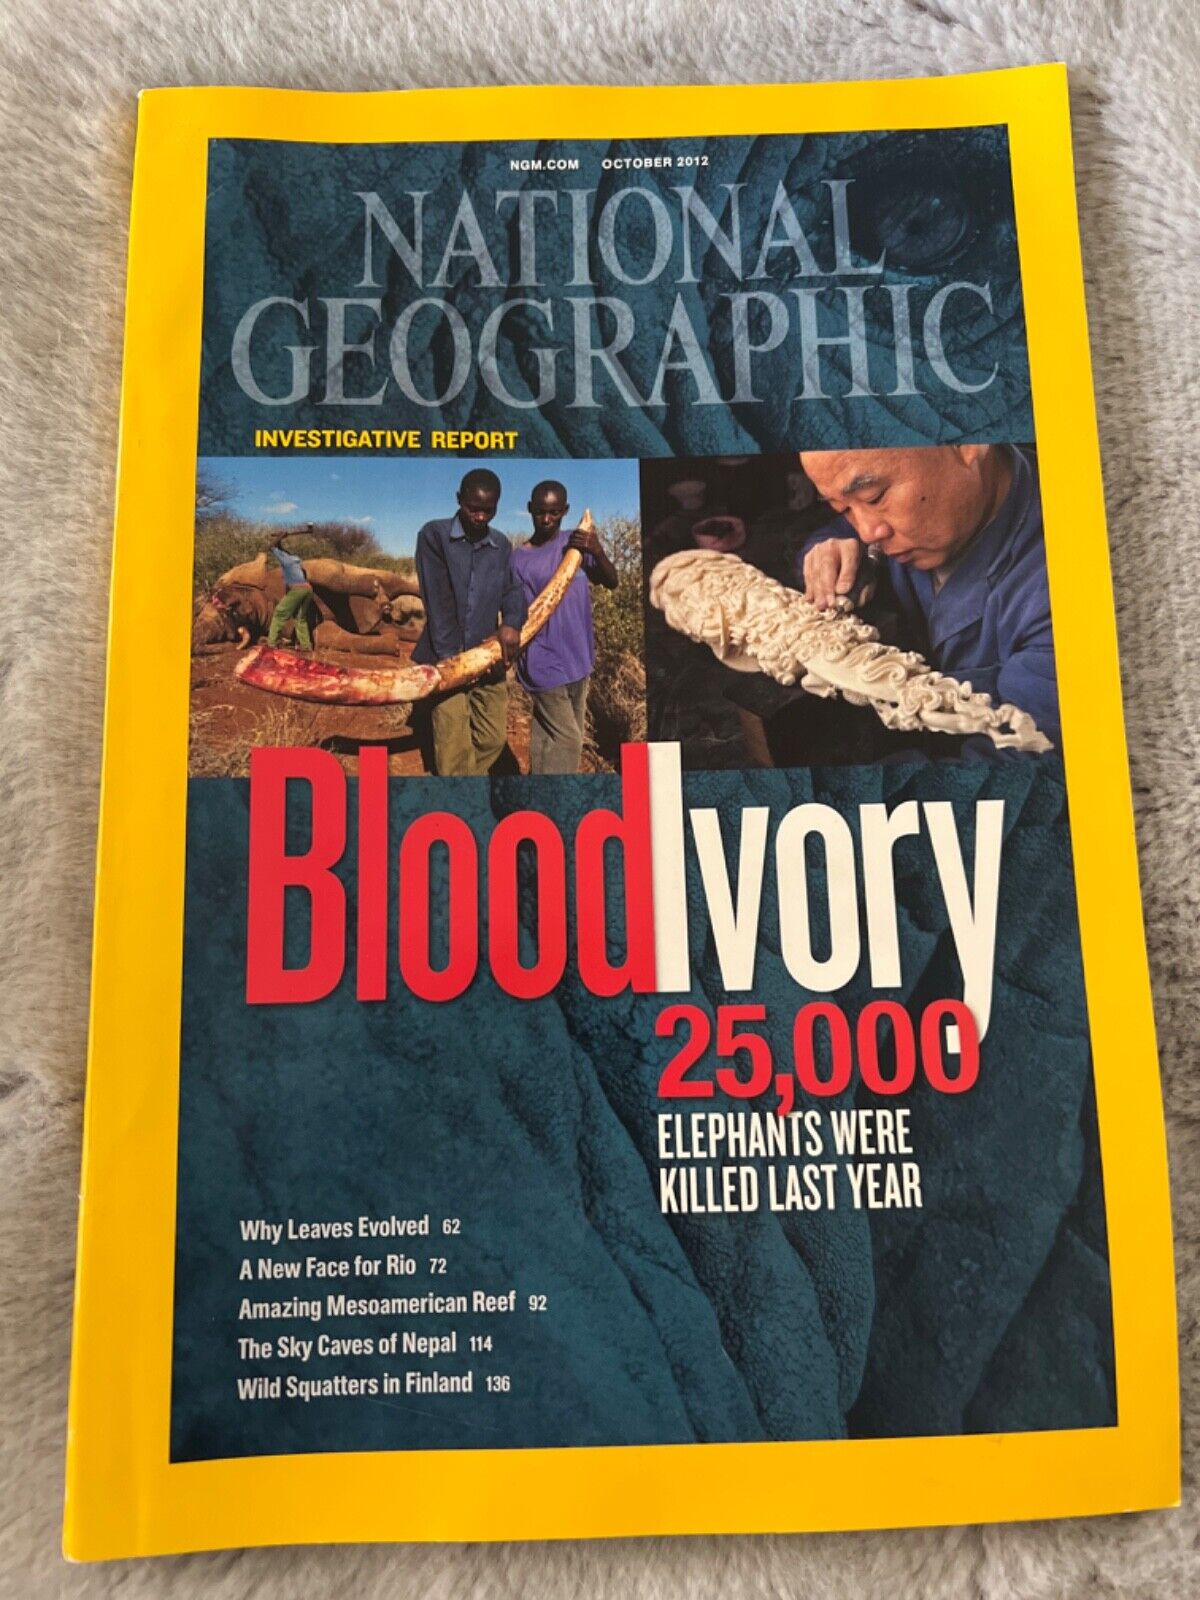 National Geographic Magazine October 2012 - Blood Ivory